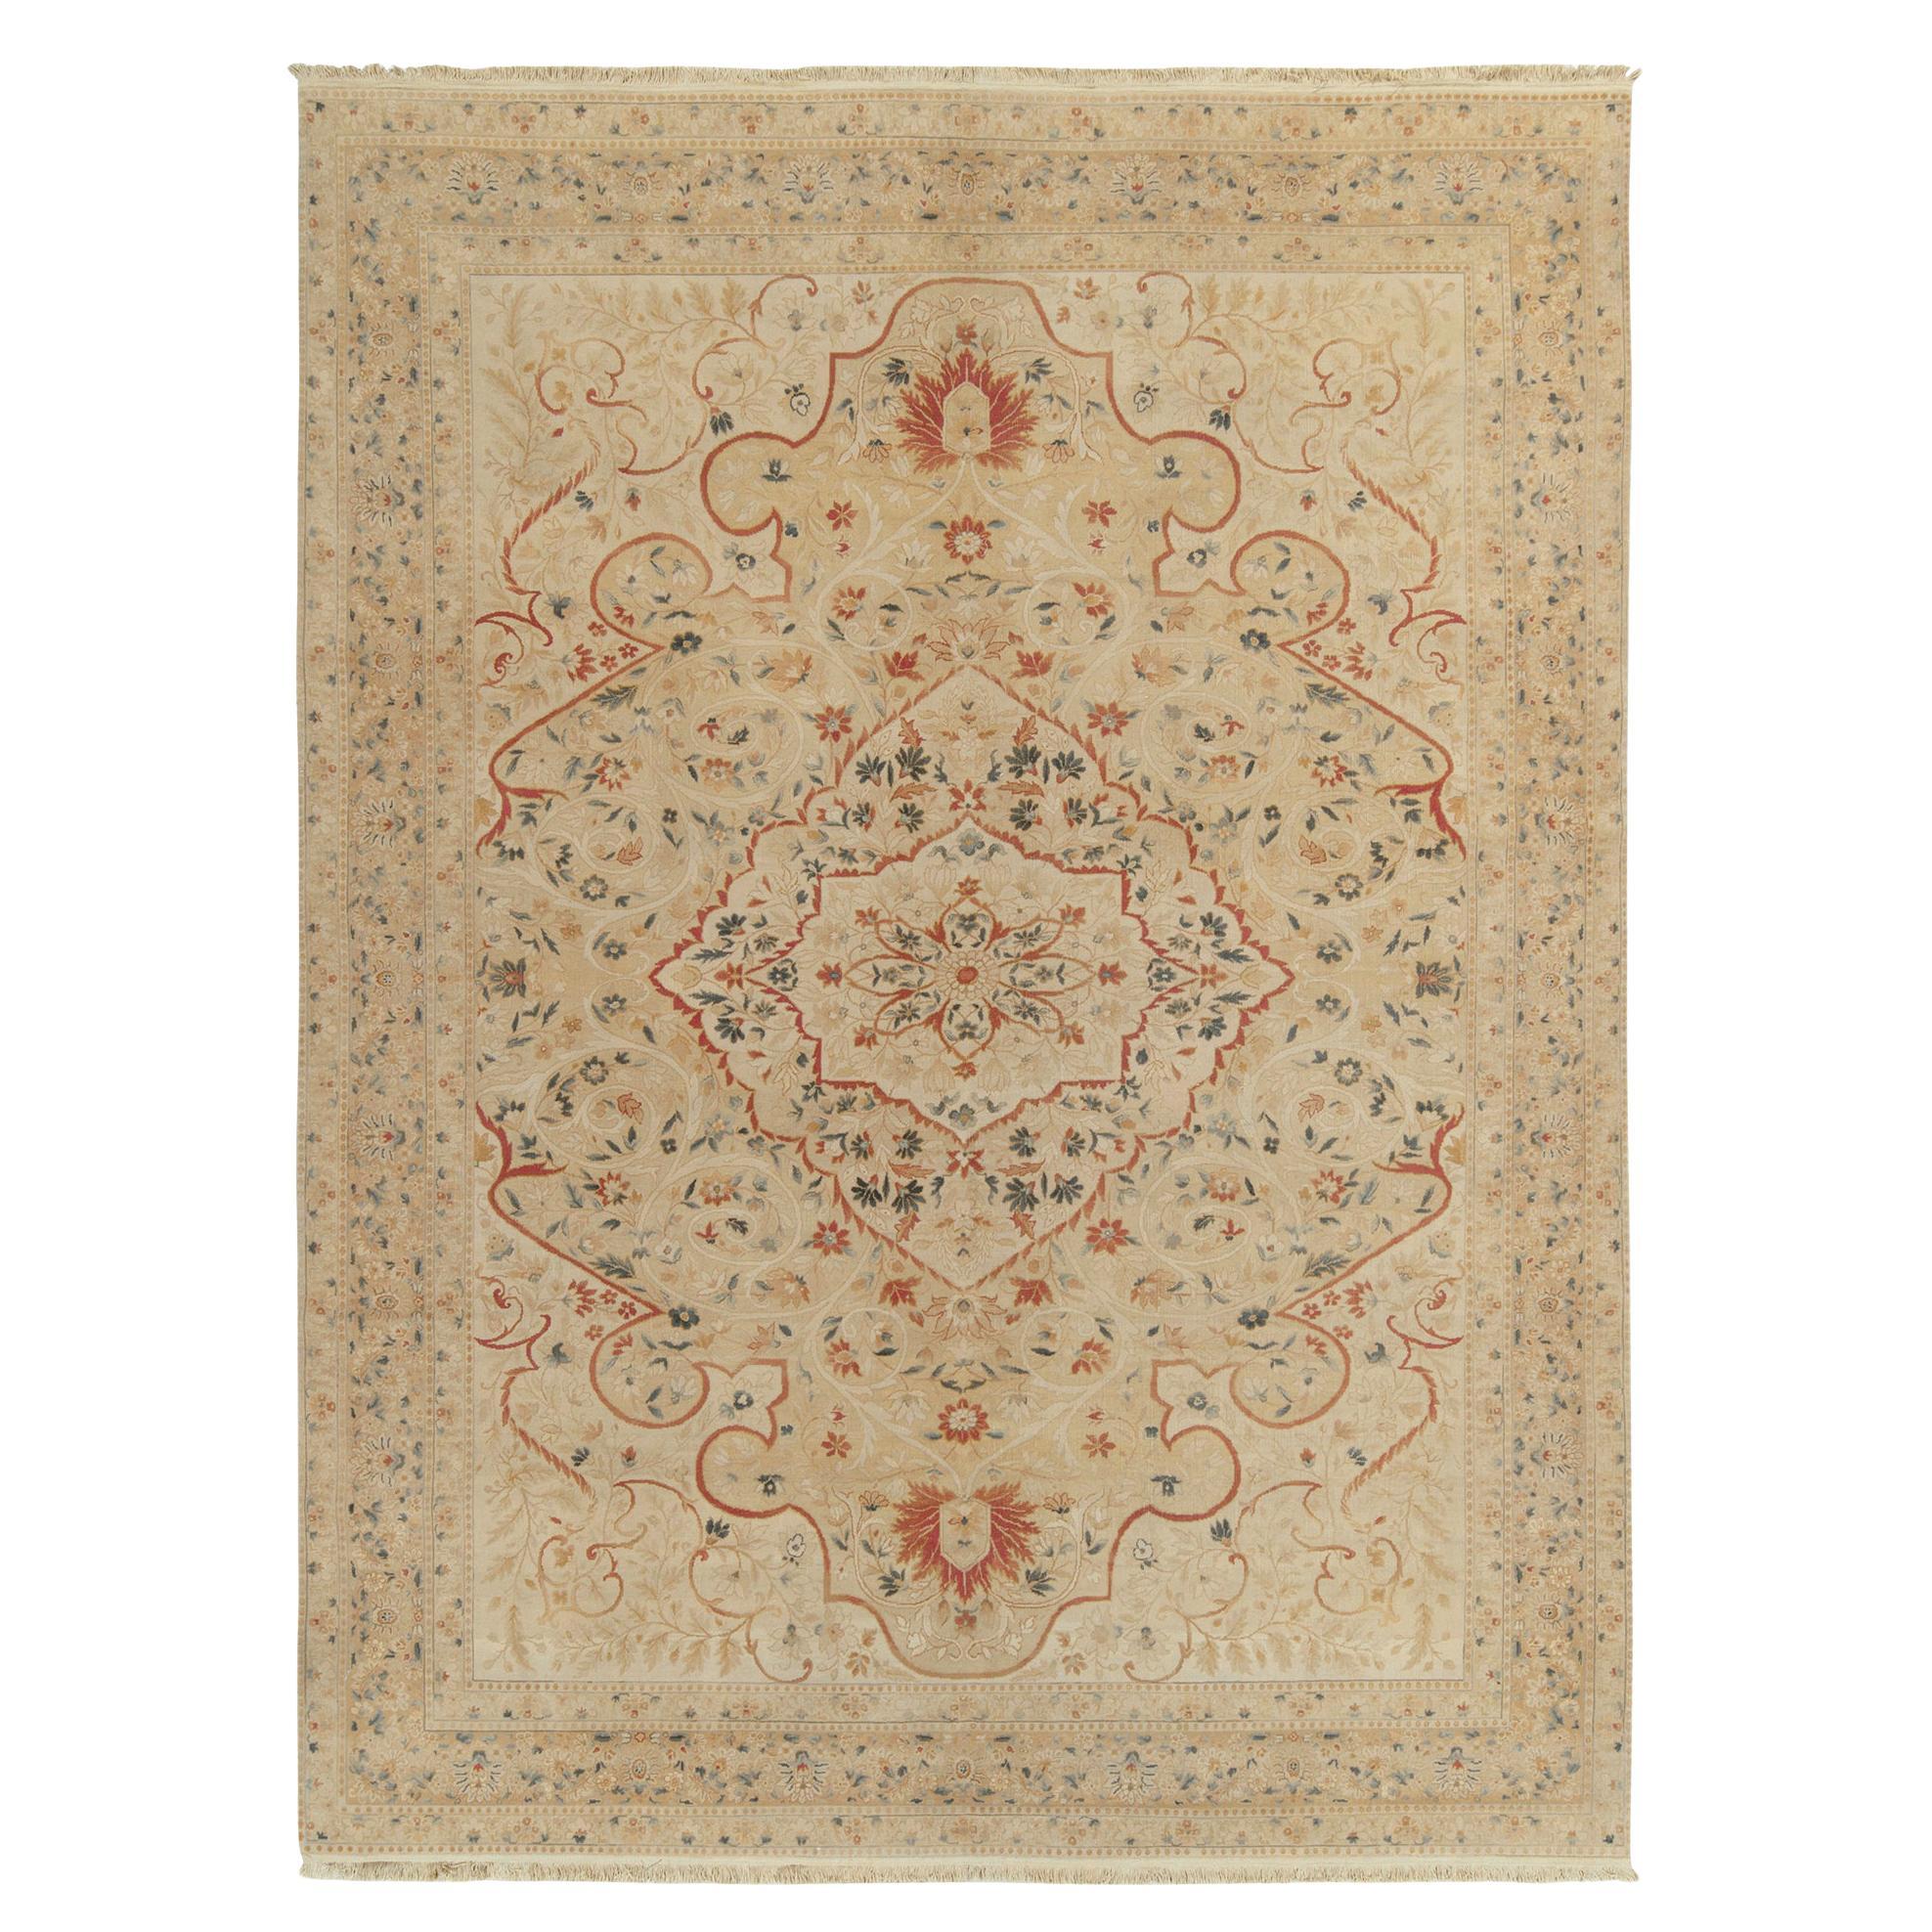 Tapis et tapis classique de style Tabriz de Kilim à motifs floraux beiges, rouges et verts